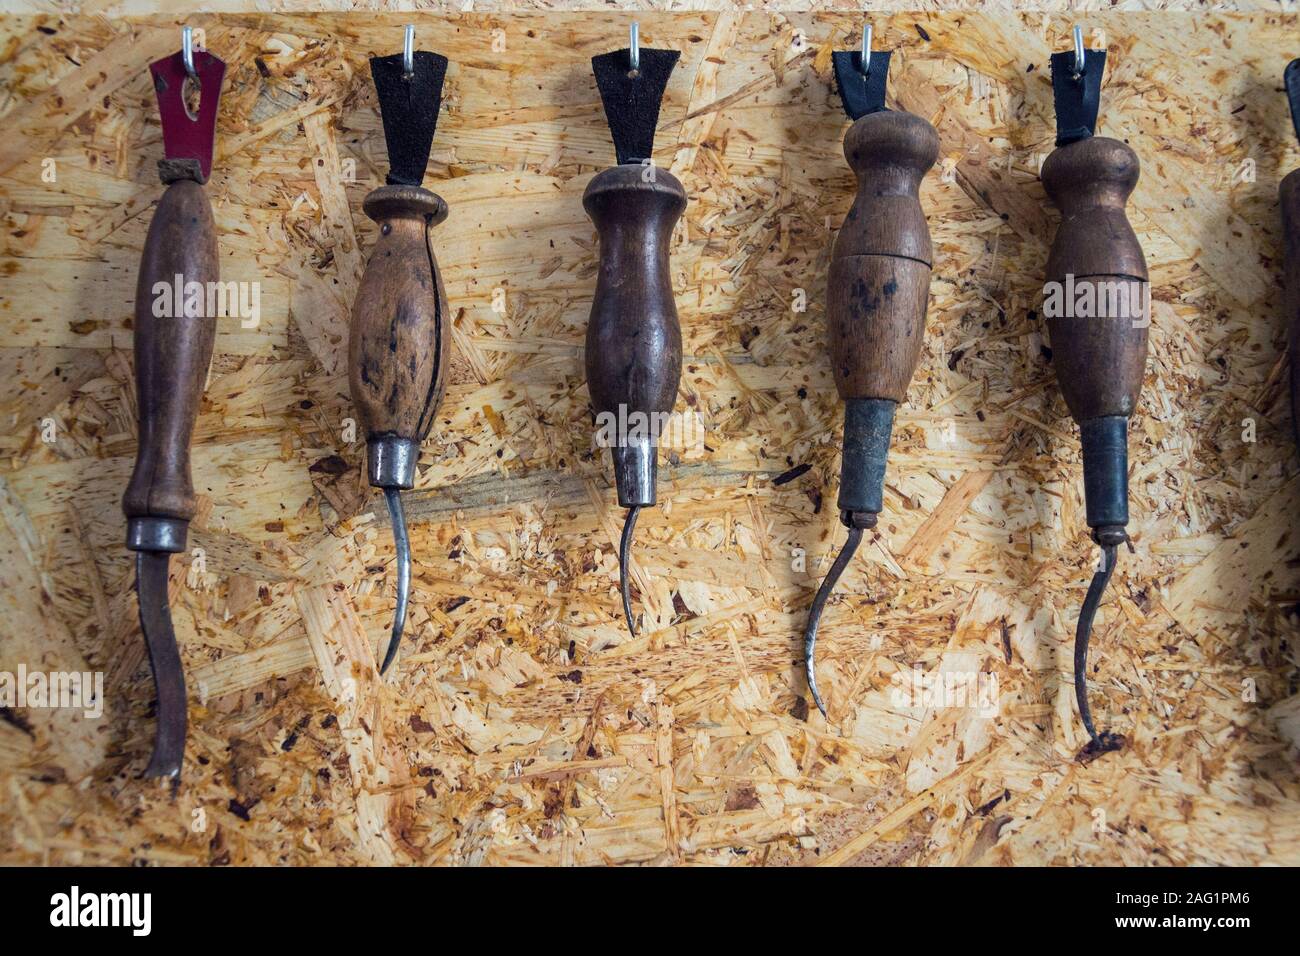 Gruppe von alten Schuhmacher Werkzeuge für handgemachte Schuhe Produktion,  Ahlen und Zangen für Leder auf Holz Spanplatte Hintergrund, flach anzeigen  Stockfotografie - Alamy